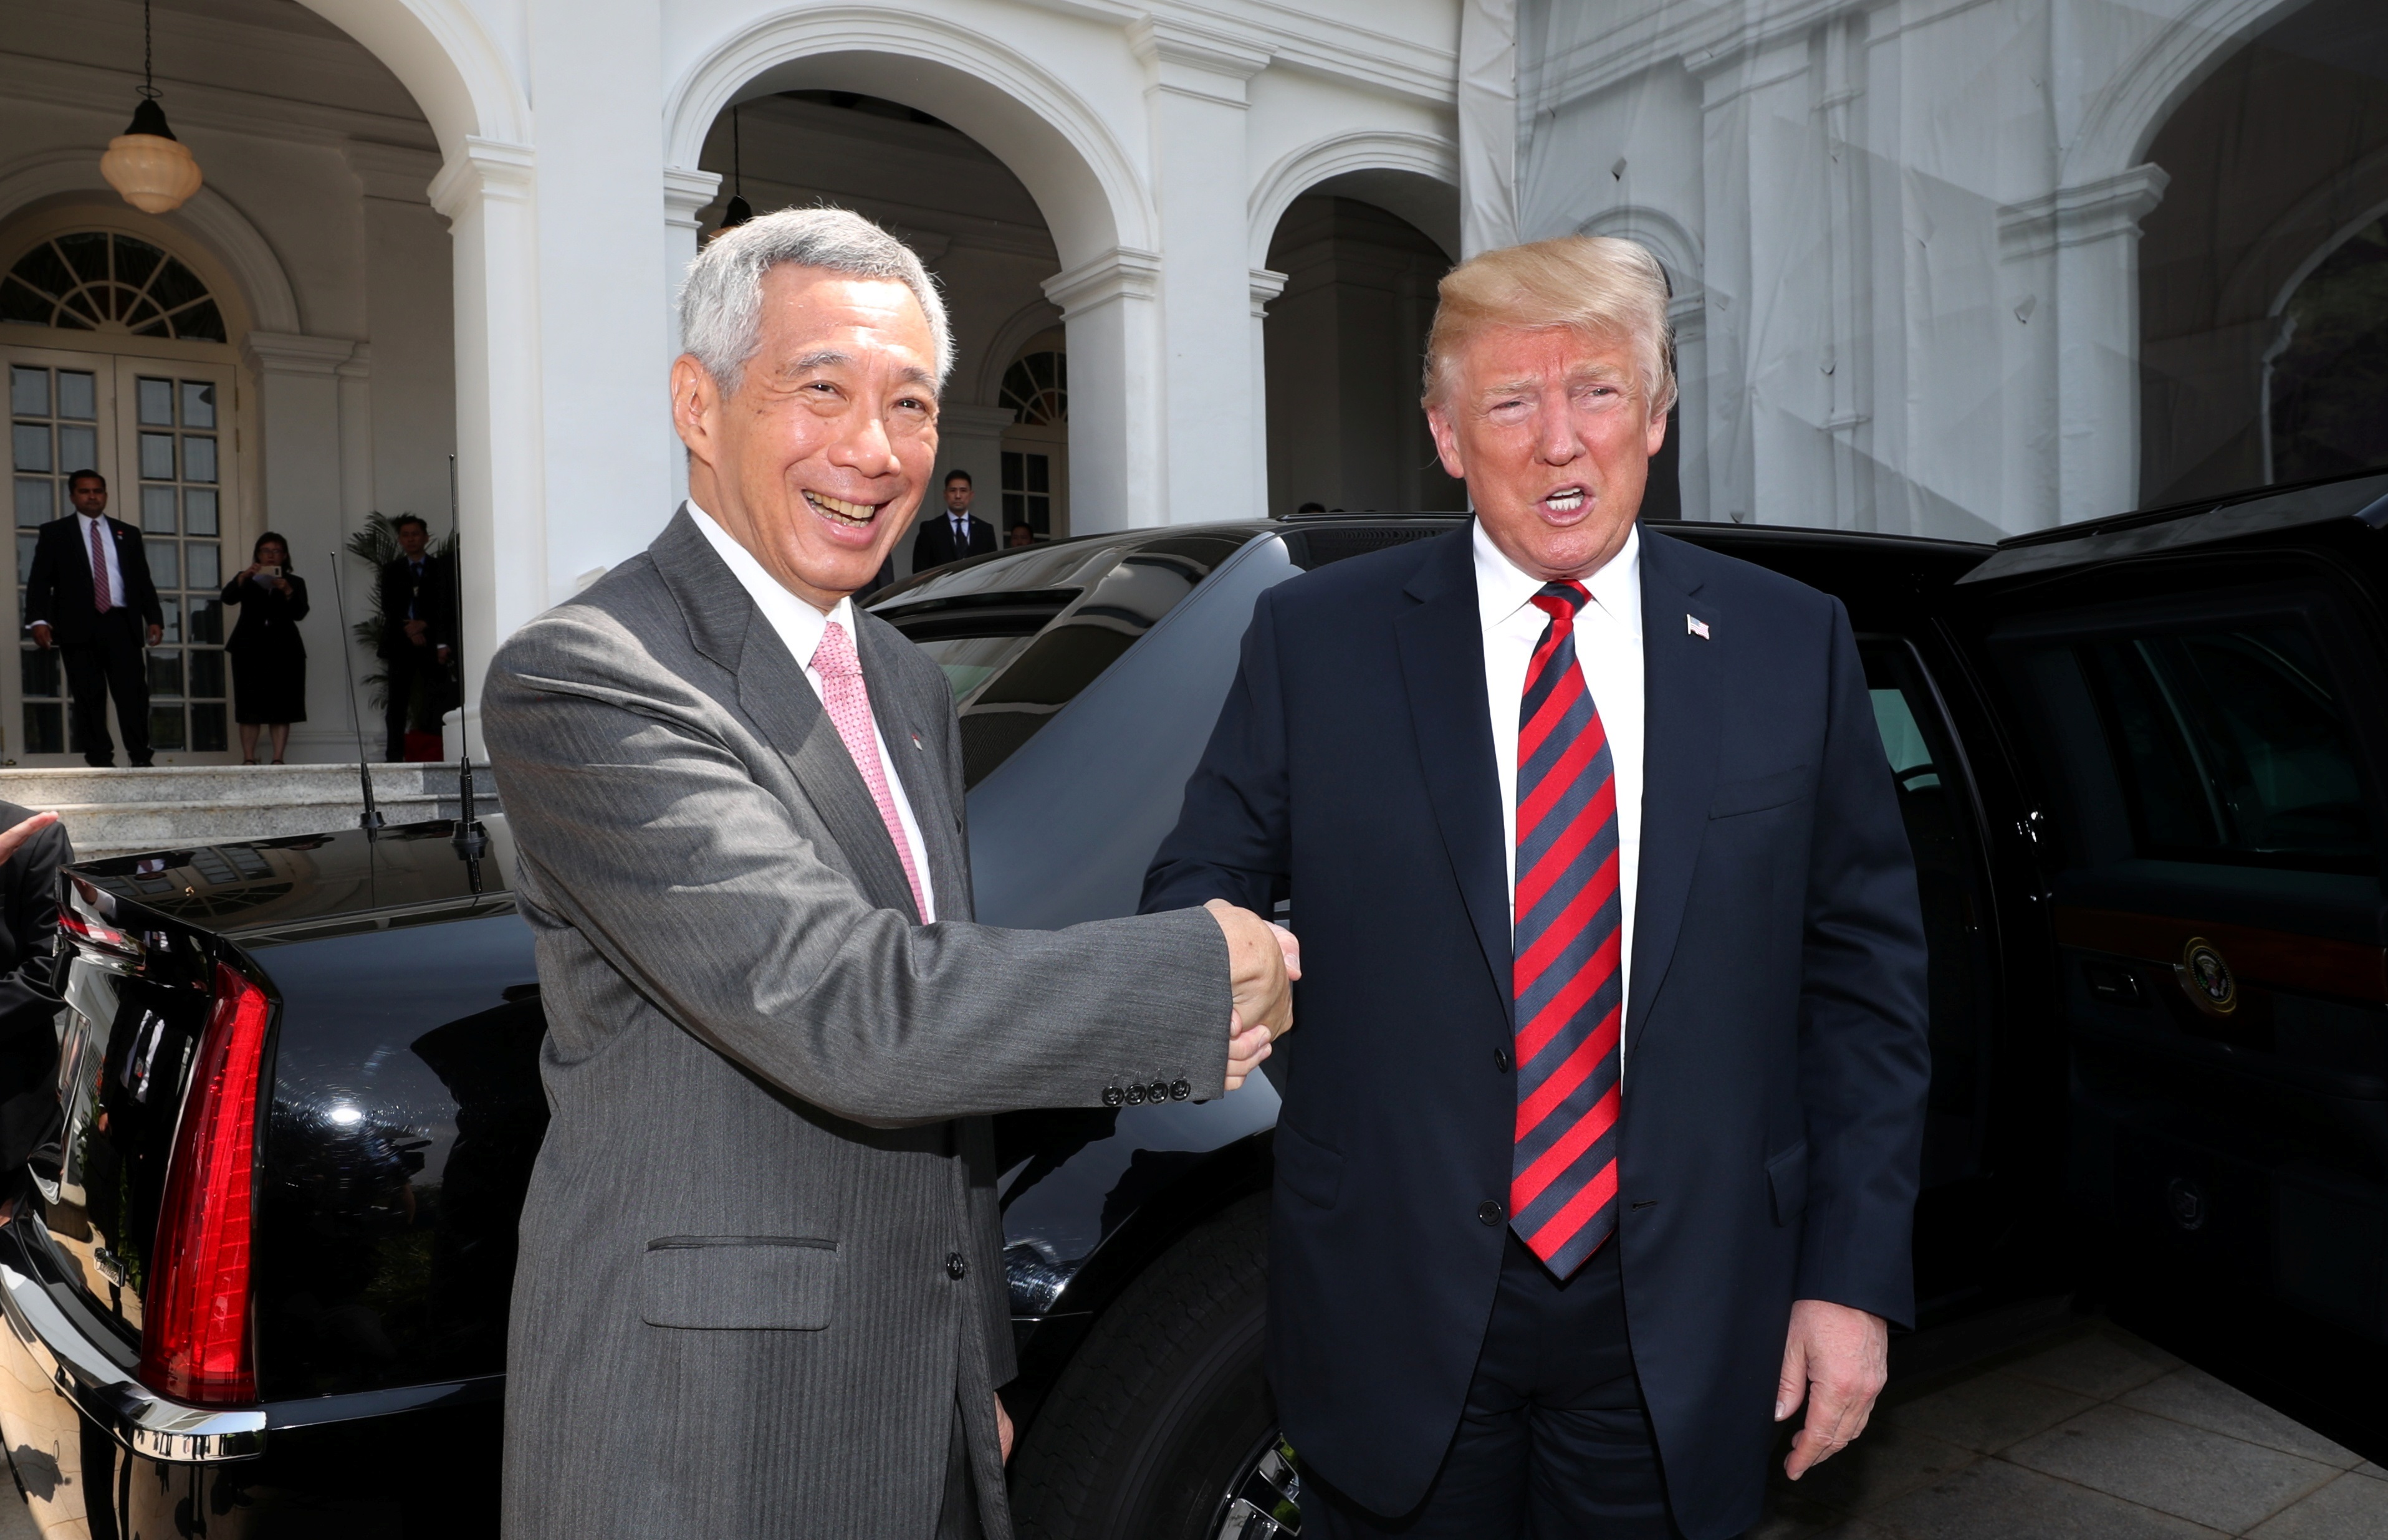 رئيس وزراء سنغافورة يستقبل ترامب لدى وصوله إلى مقر رئاسة الوزراء السنغافورية